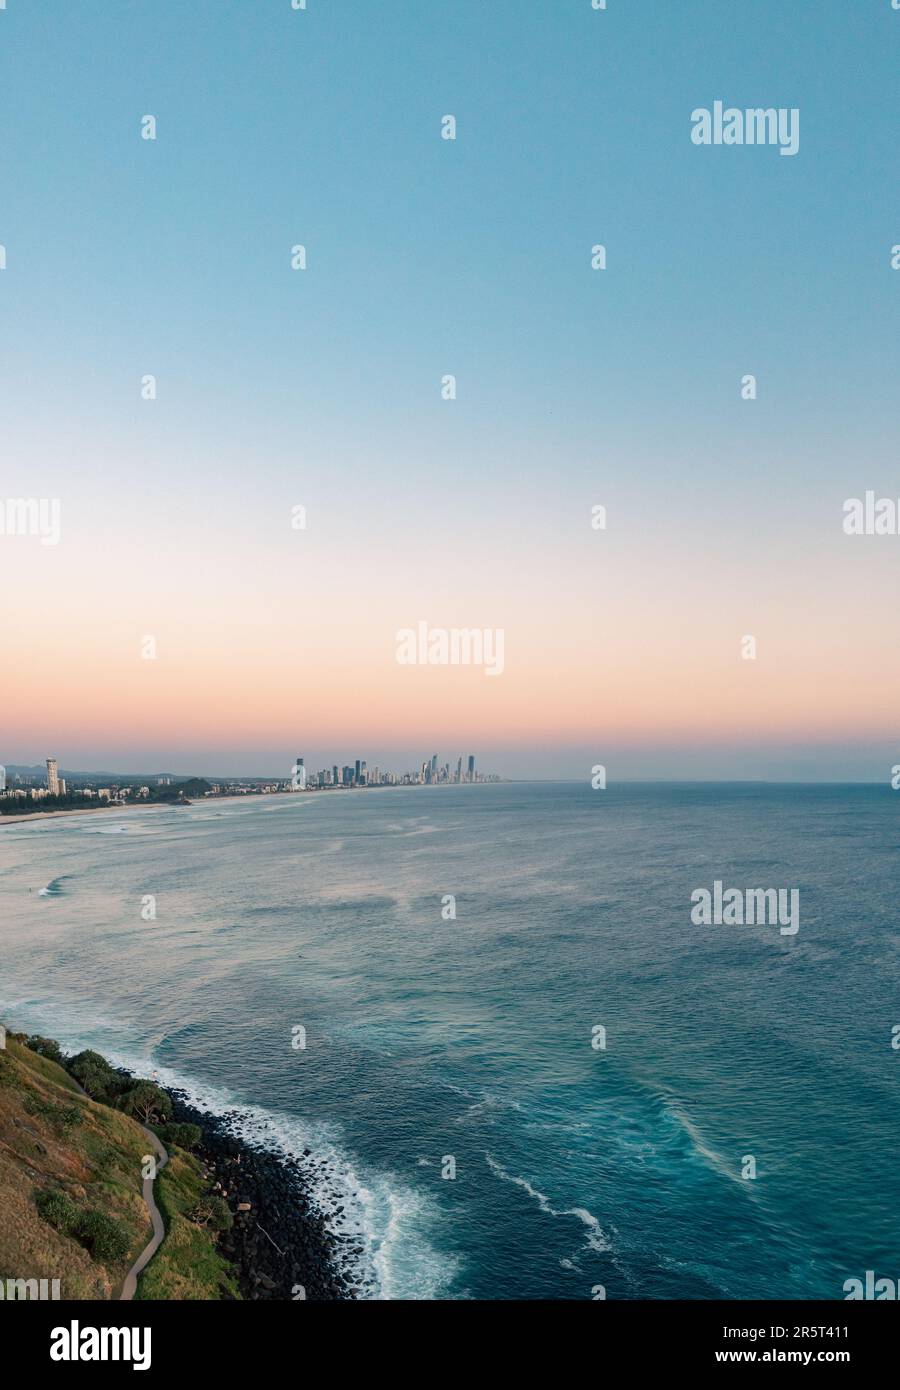 Una vista aerea di un vivace skyline cittadino che guarda alla costa, con lussureggianti colline verdi che si affacciano sull'oceano blu scintillante Foto Stock